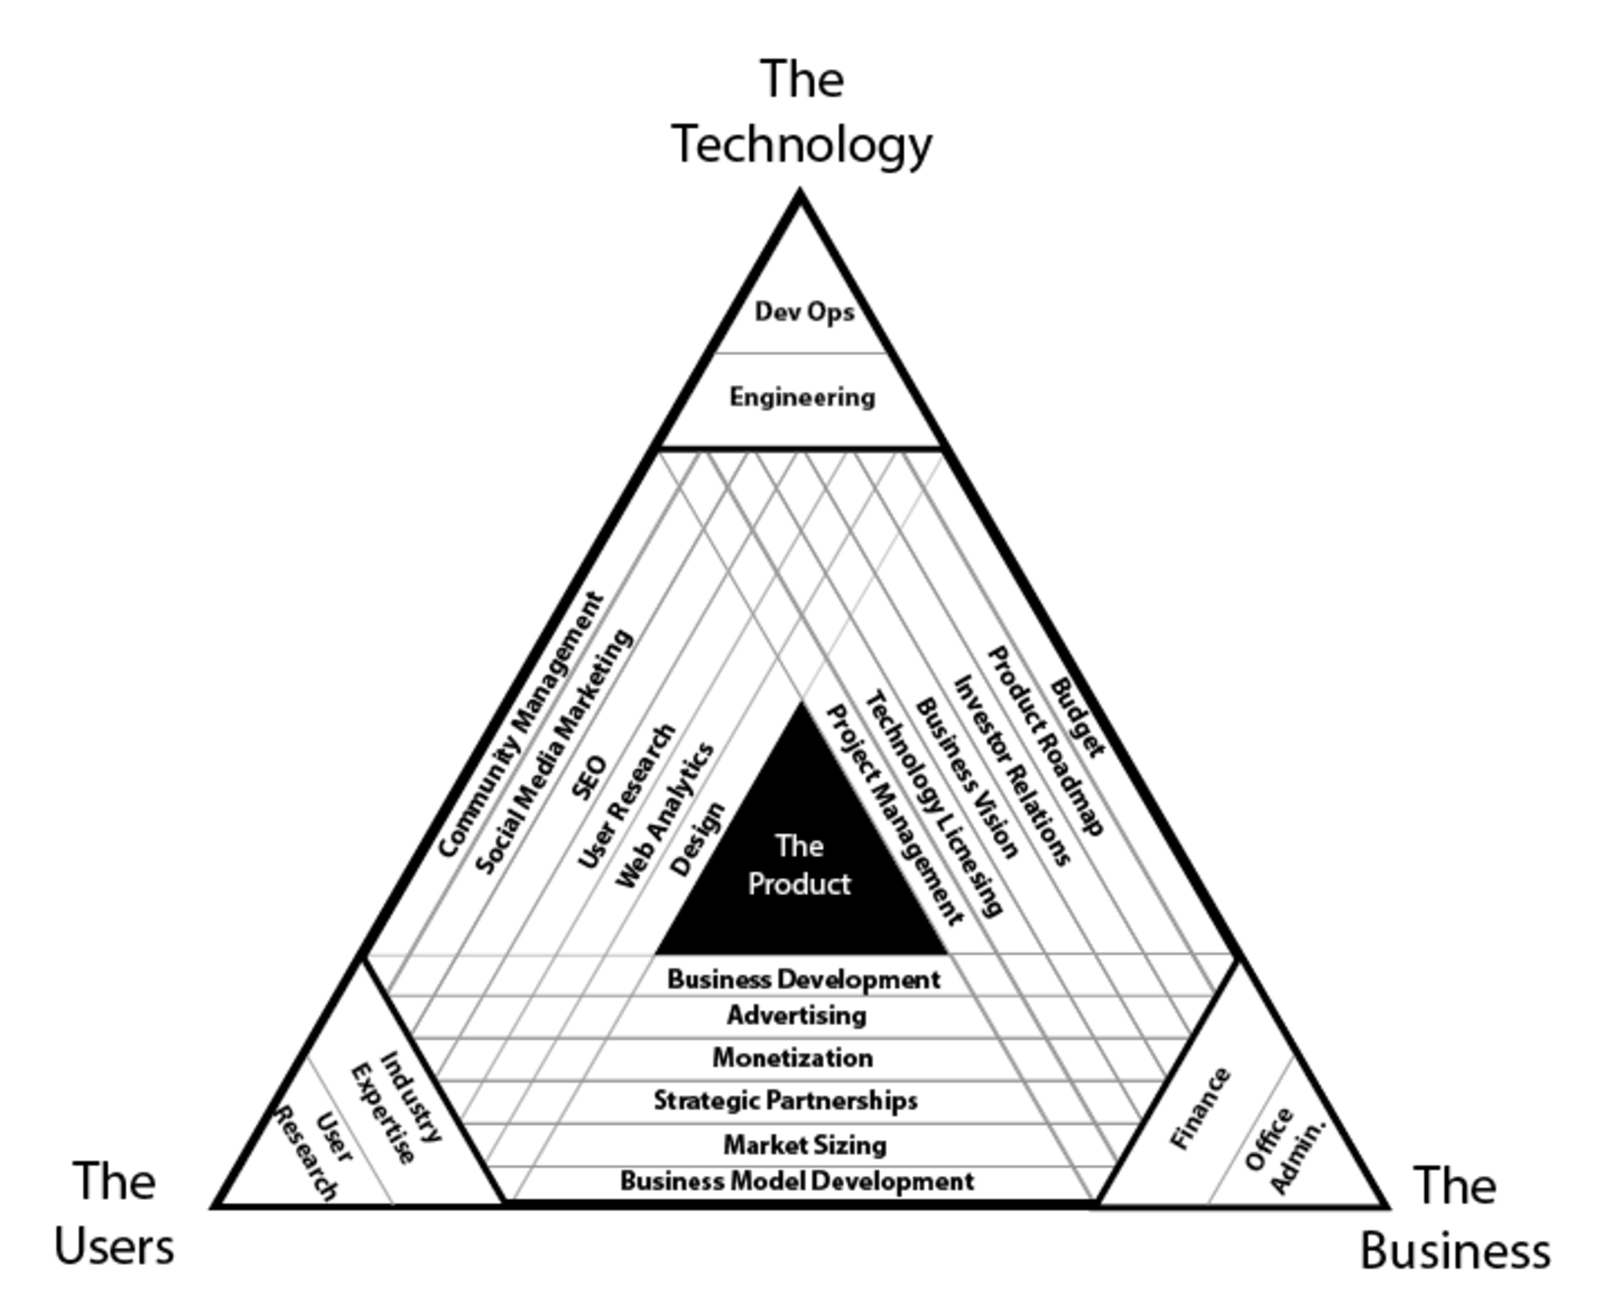 diagramma dei ruoli in un business tecnologico che